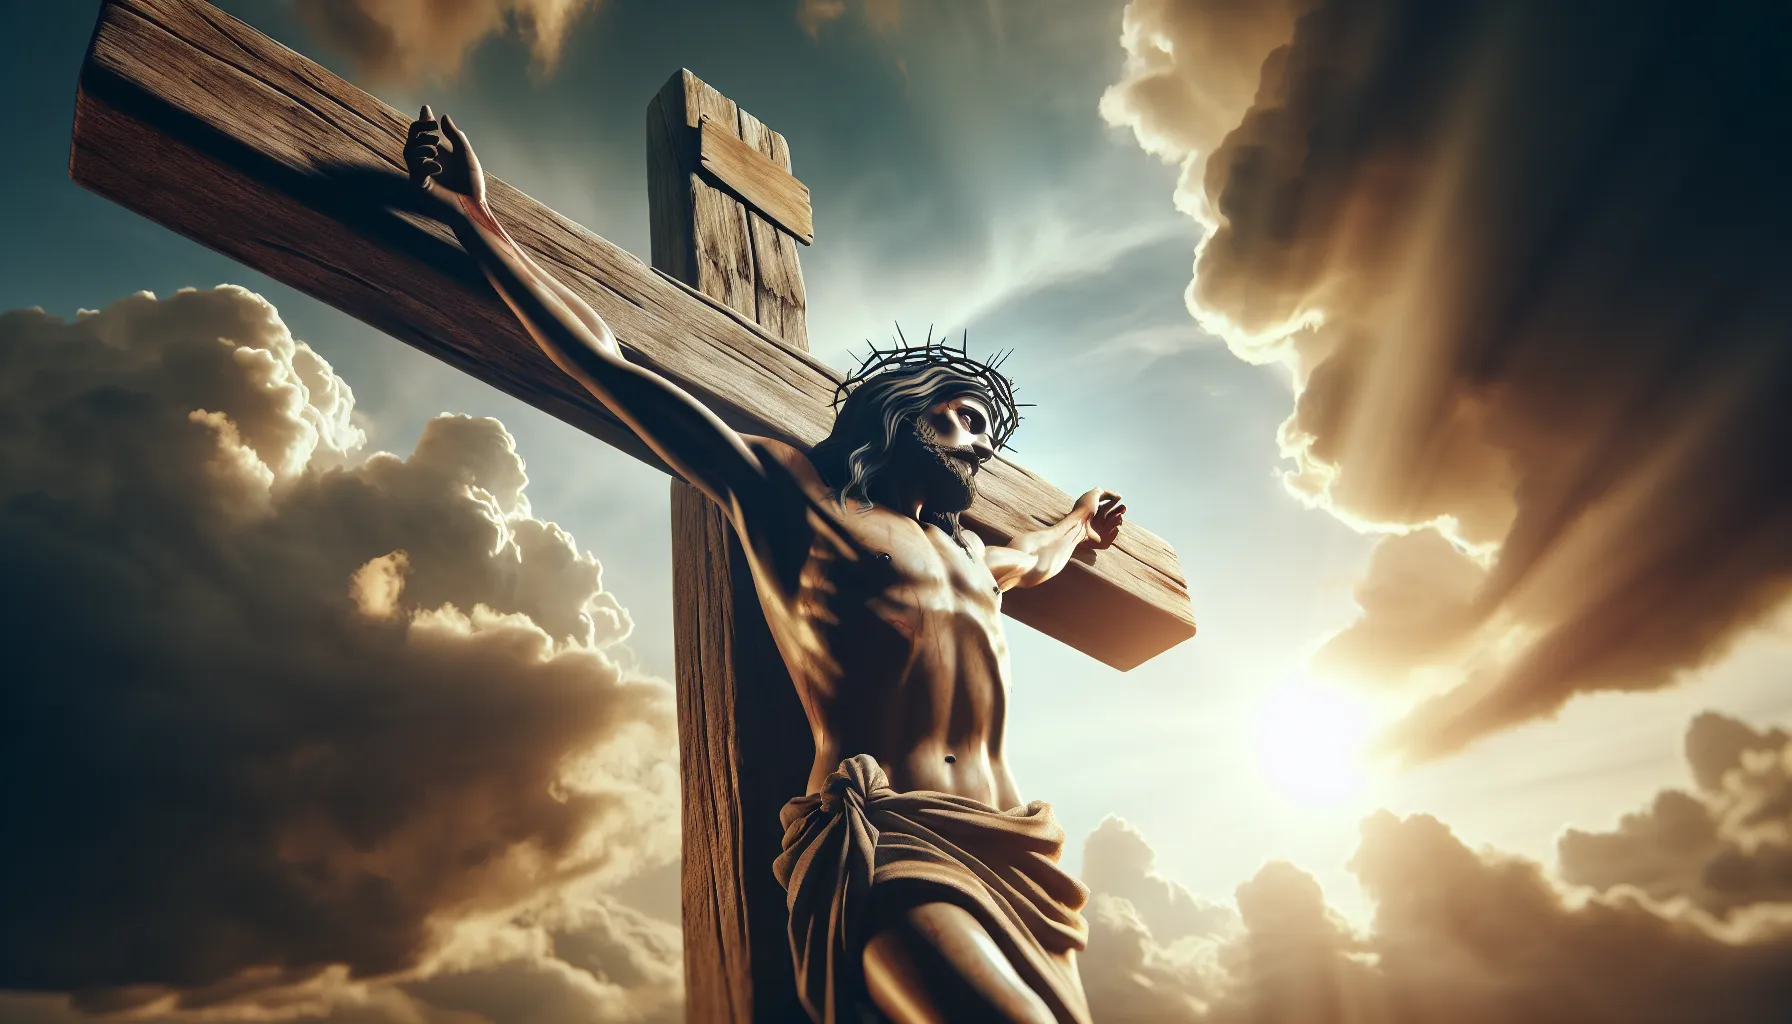 Imagen ilustrativa de la crucifixión de Jesucristo, simbolizando su sacrificio por la redención de la humanidad y el amor incondicional que representa para los cristianos.